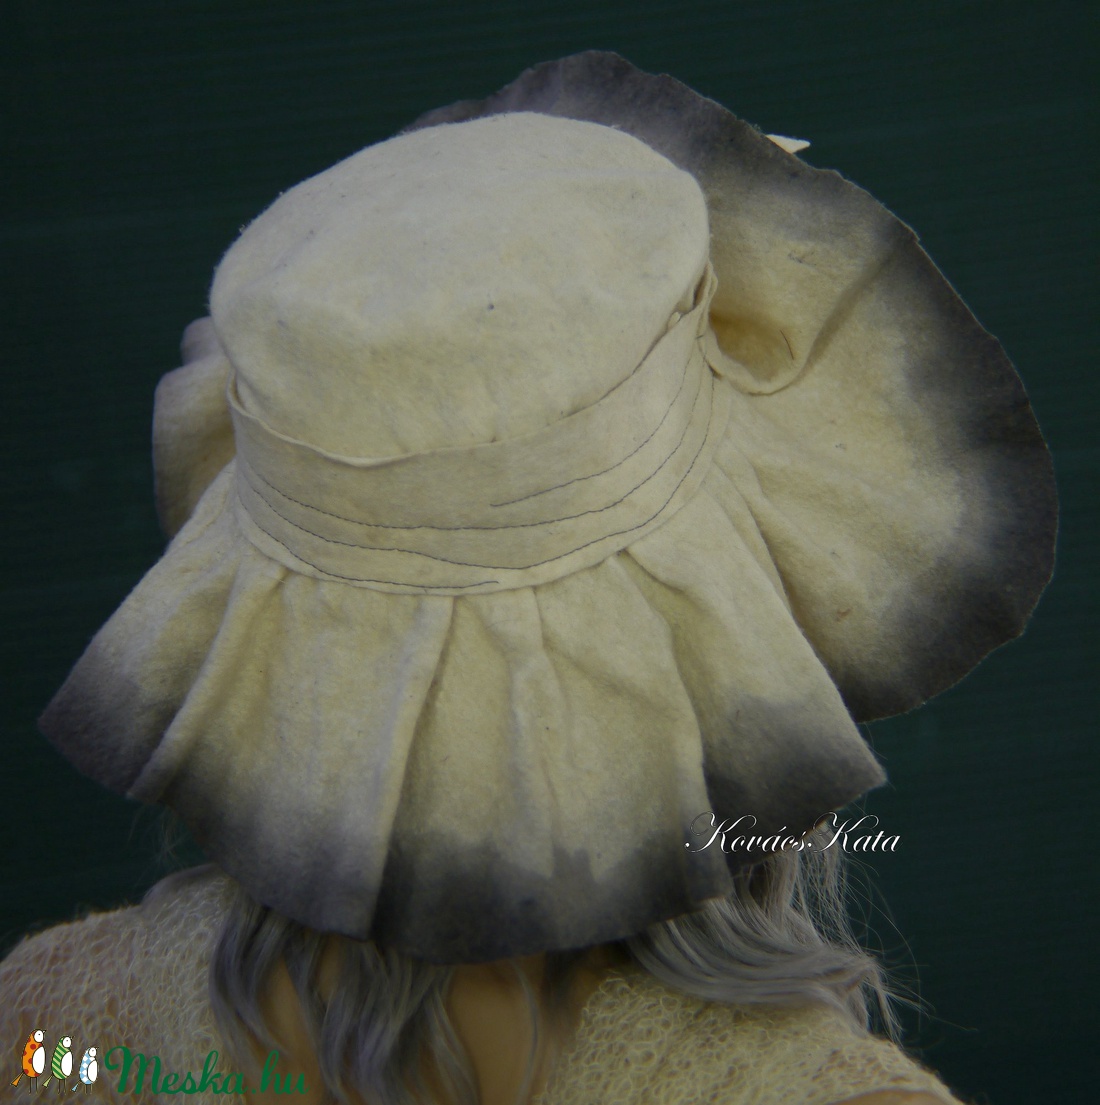 FLOWER - bohém filckalap - romantikus design kalap  - ruha & divat - sál, sapka, kendő - kalap - Meska.hu